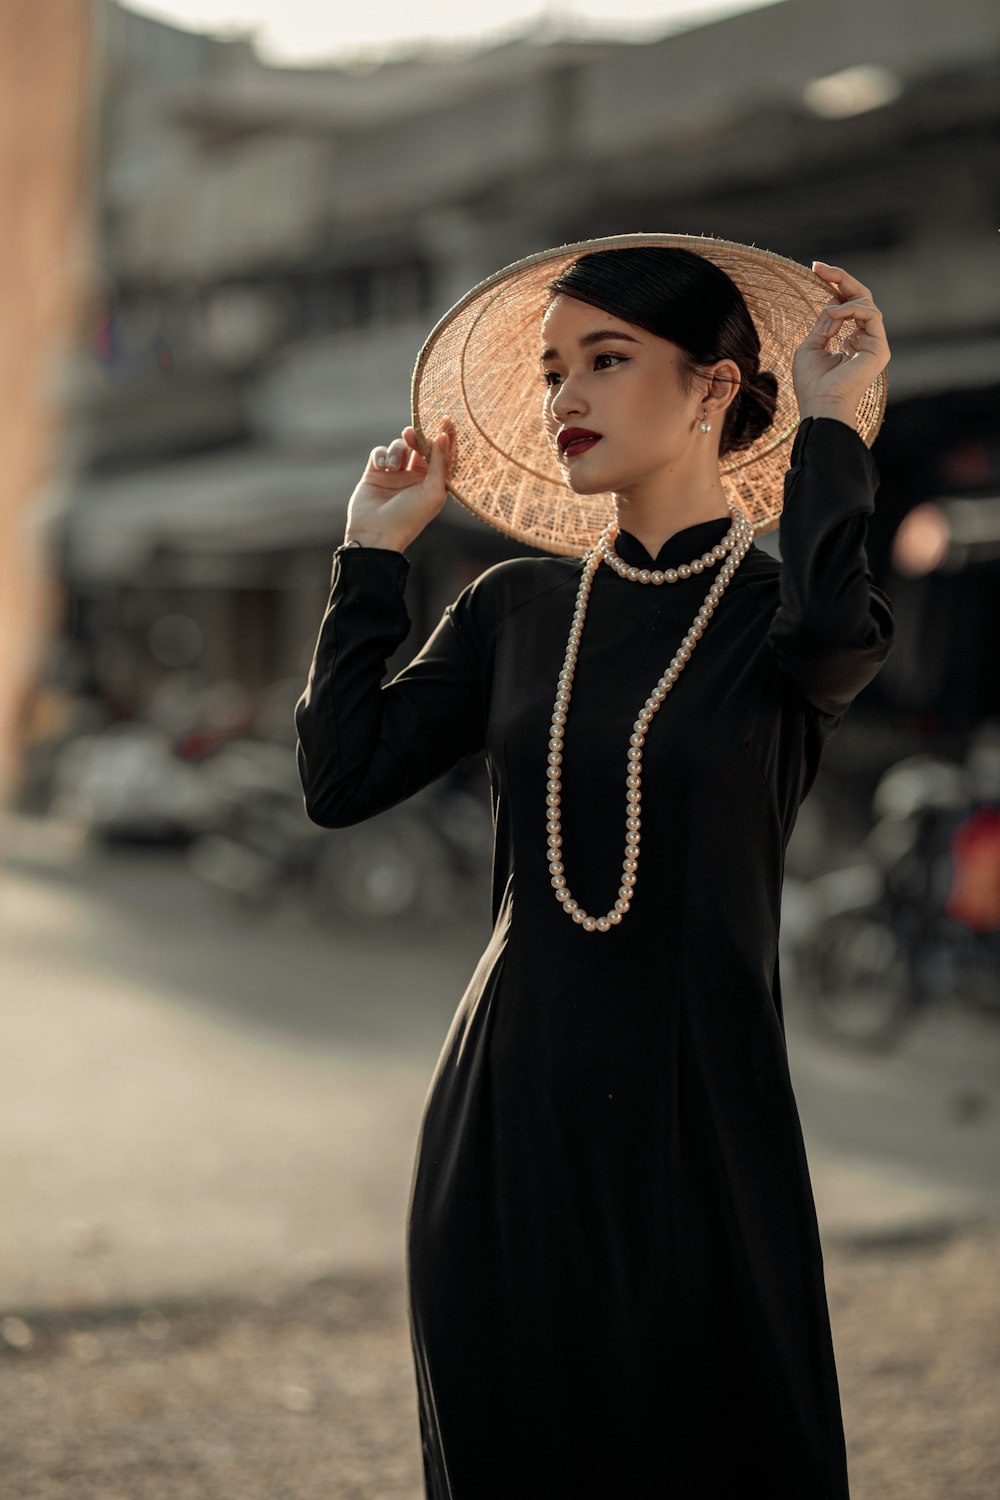 Une femme en robe noire et chapeau de paille